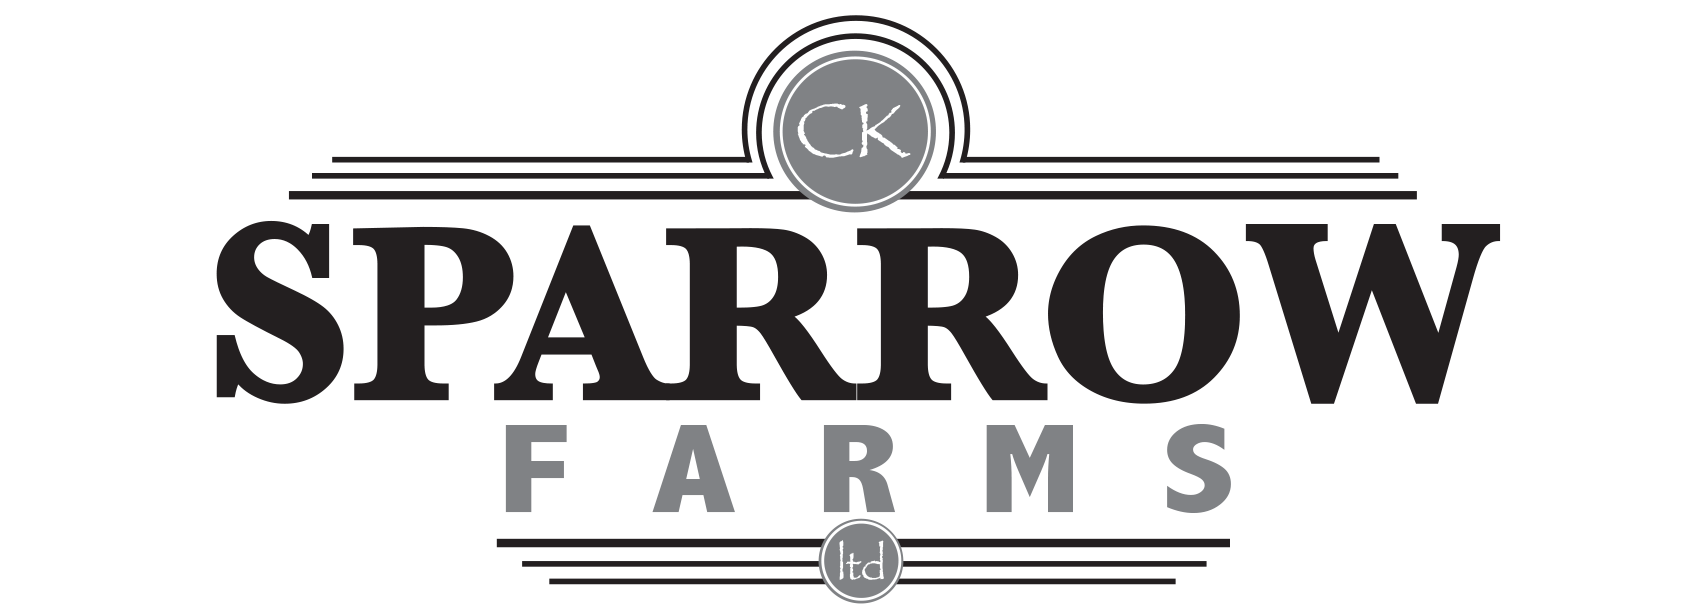 CK Sparrow Farms